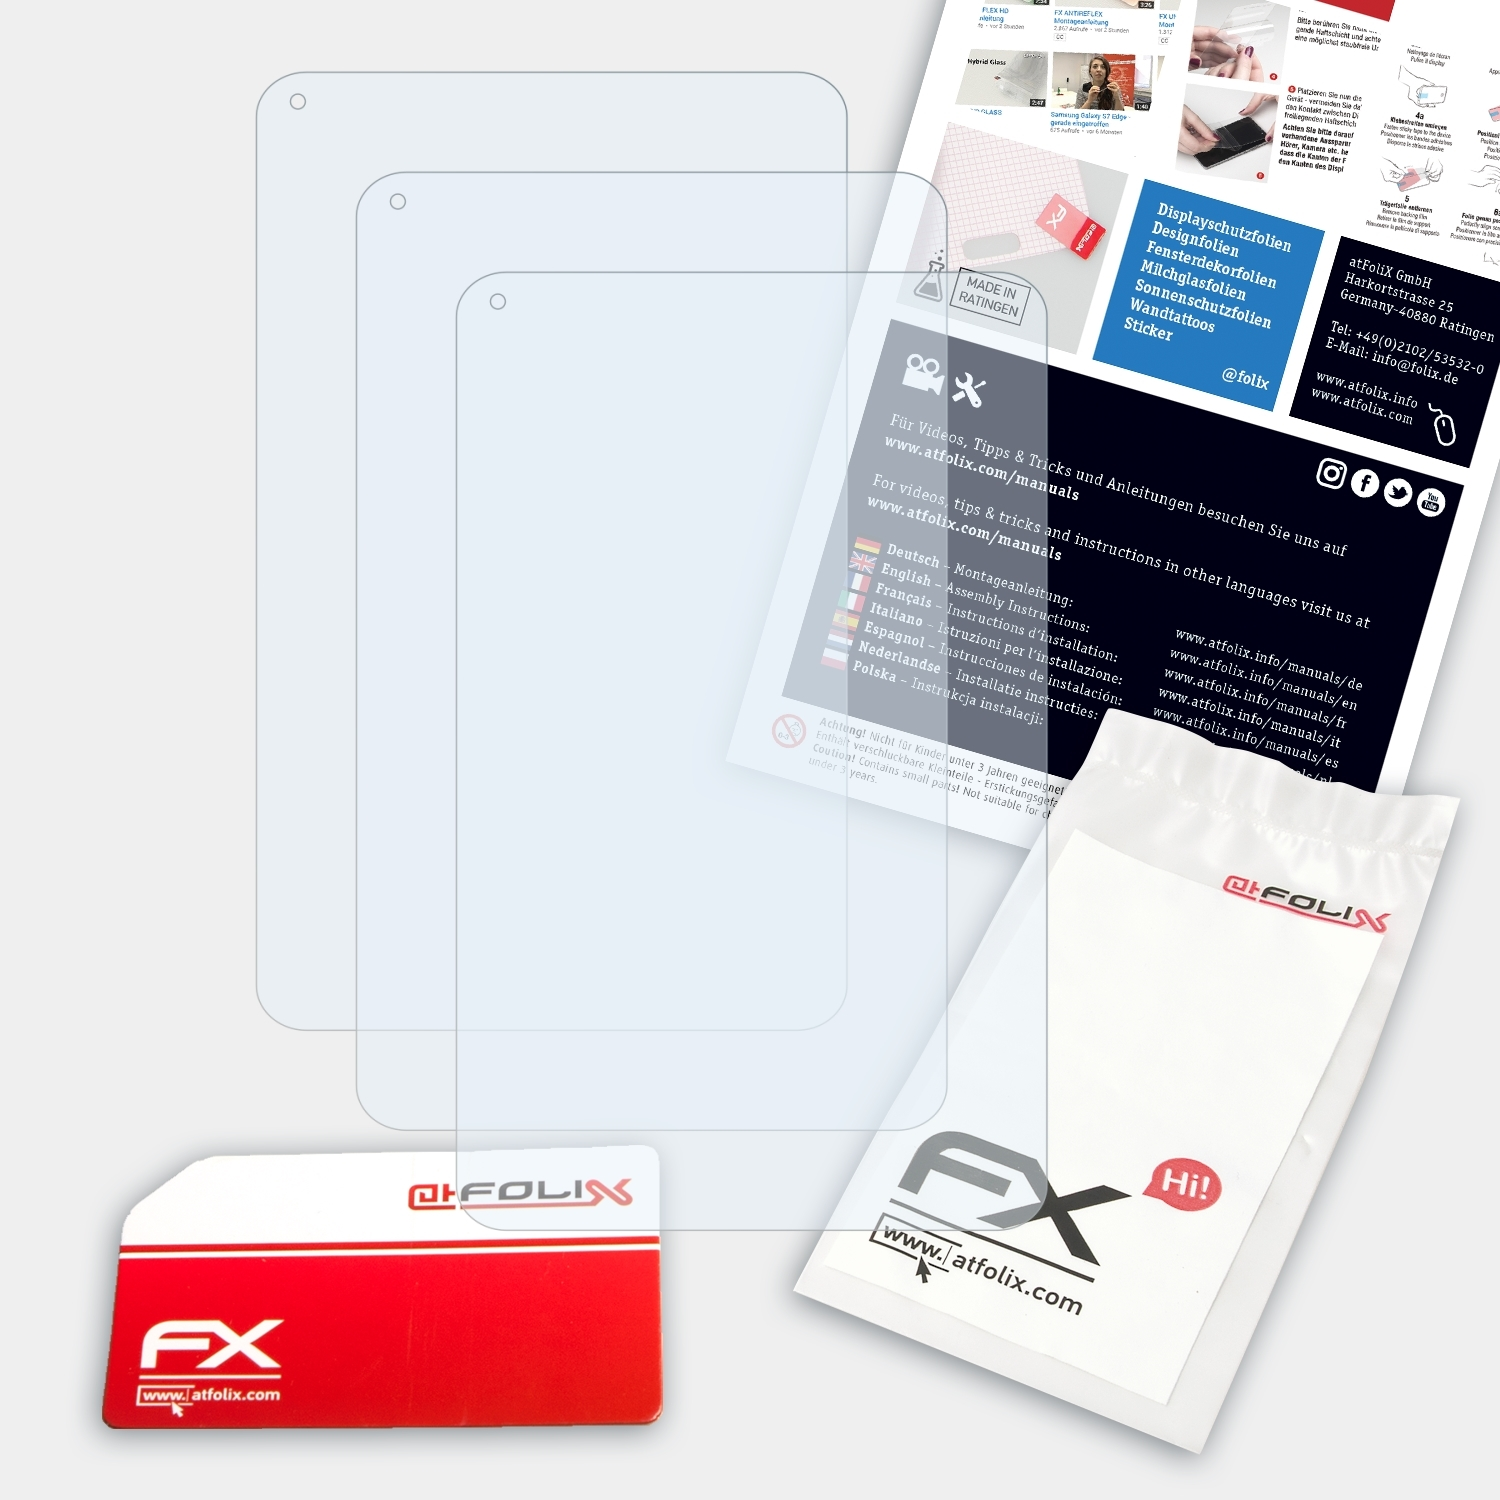 X110 ATFOLIX 3G) XIDO 3x FX-Clear Displayschutz(für